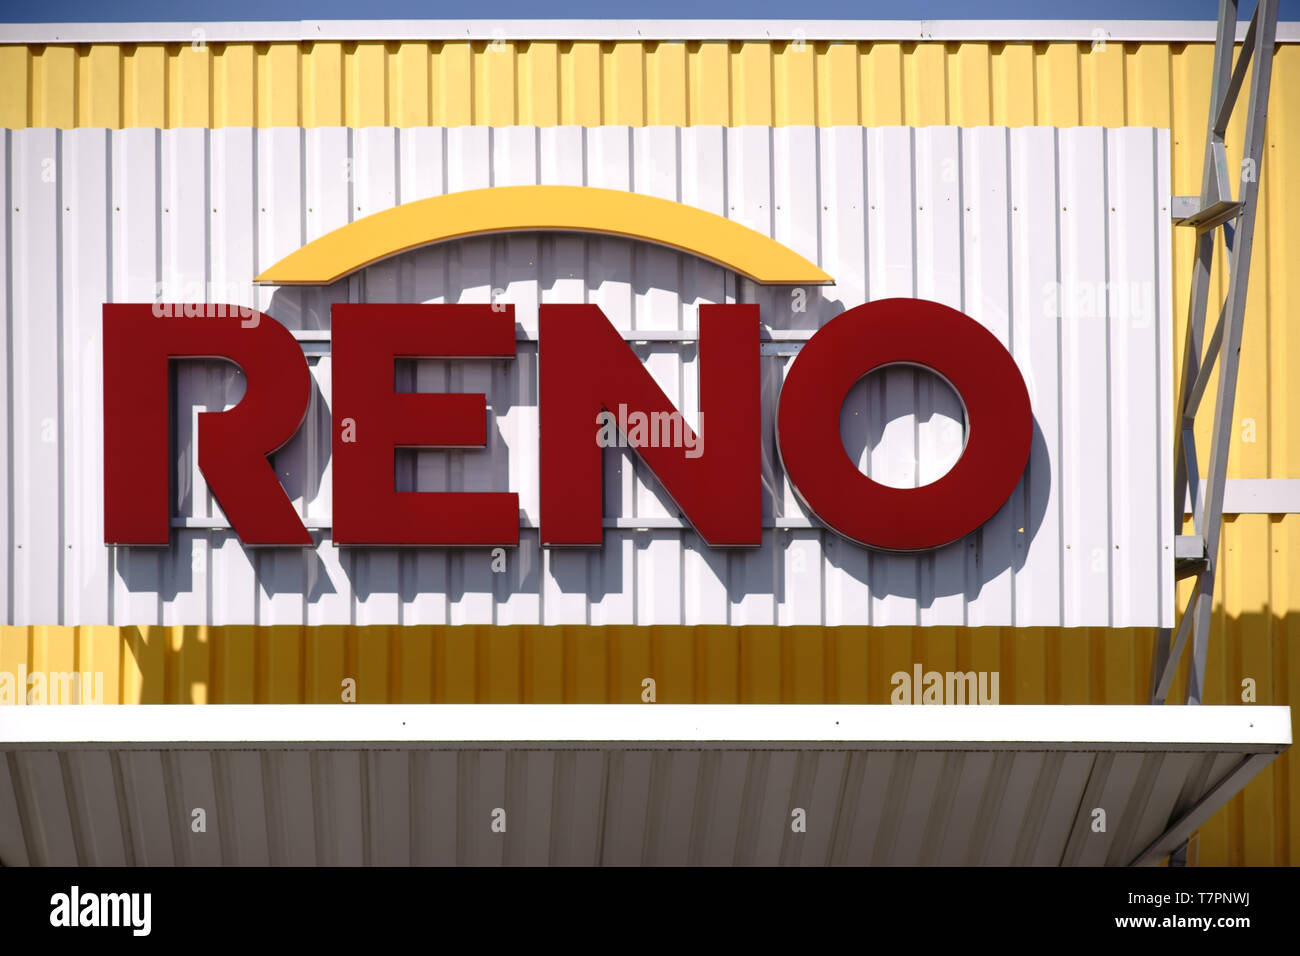 Pirmasens, Alemania - 30 de marzo de 2019: El estridente moderna y colorida fachada exterior hecha de metal corrugado de una tienda de zapatos de zapata Reno GmbH con logo Foto de stock